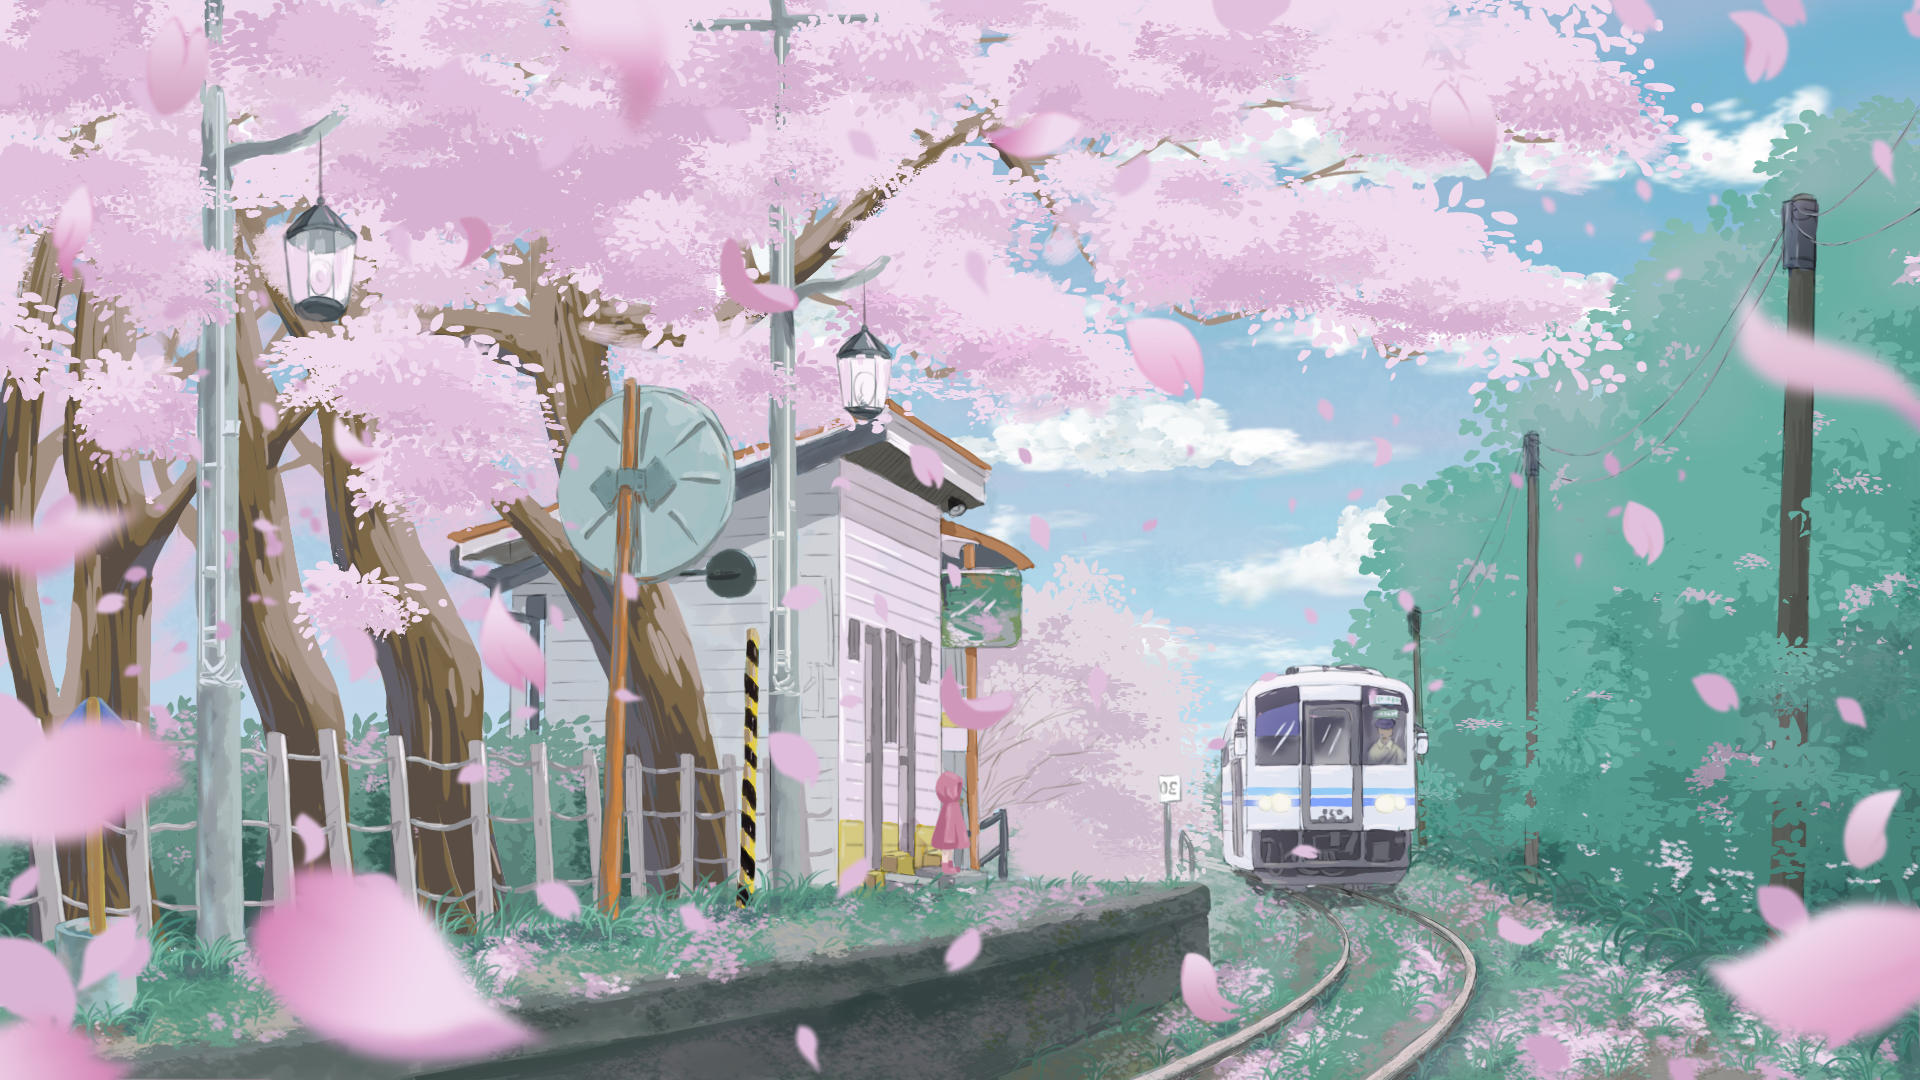 樱花电车唯美樱花壁纸图片 桌面壁纸图片 壁纸下载 元气壁纸